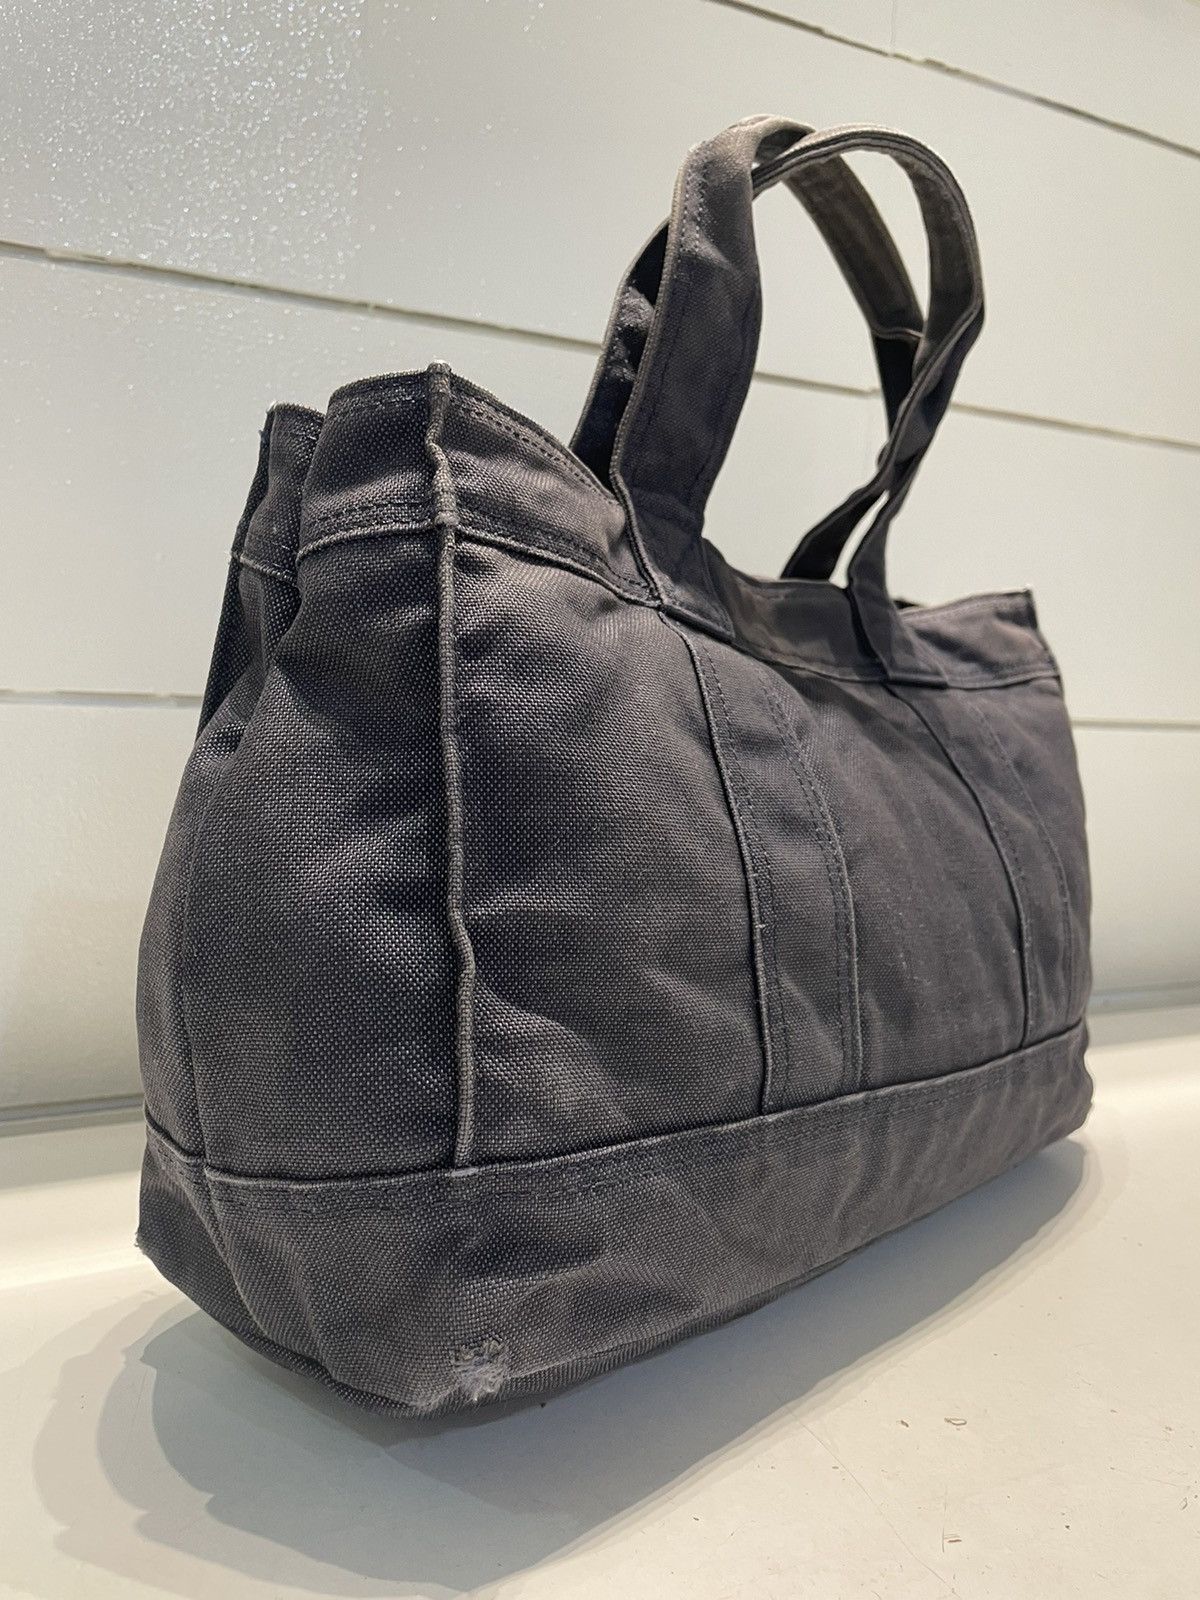 Porter Made In Japan Black Denim Tote Bag Denim Material - 6